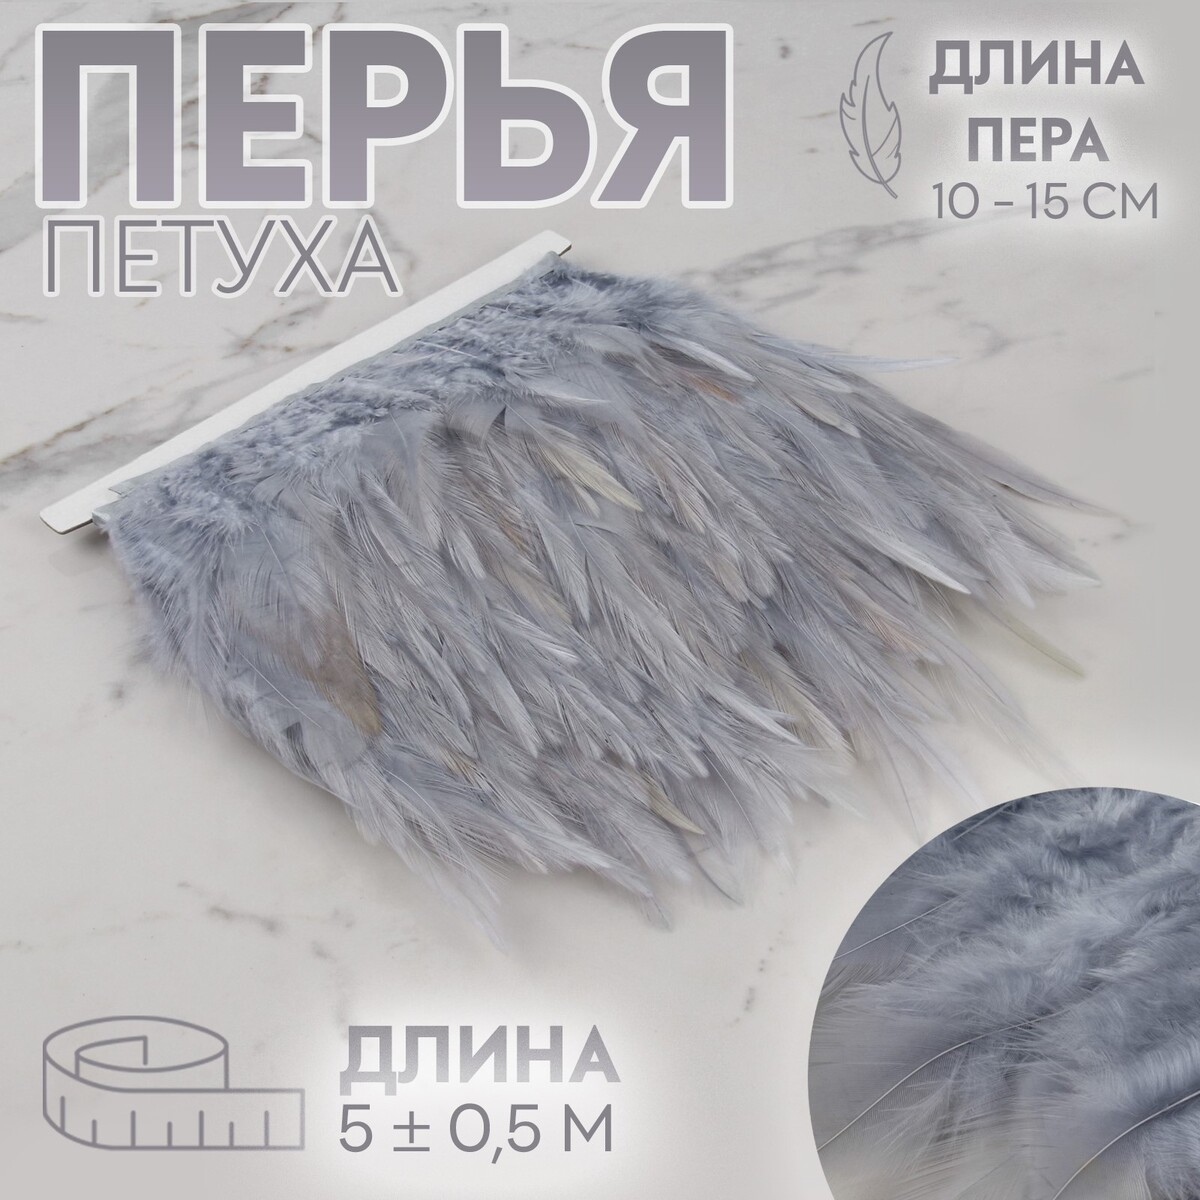 Тесьма с перьями петуха, 10-15 см, 5 ± 0,5 м, цвет серый тесьма с перьями марабу 8 10 см 5 ± 0 5 м пудровый